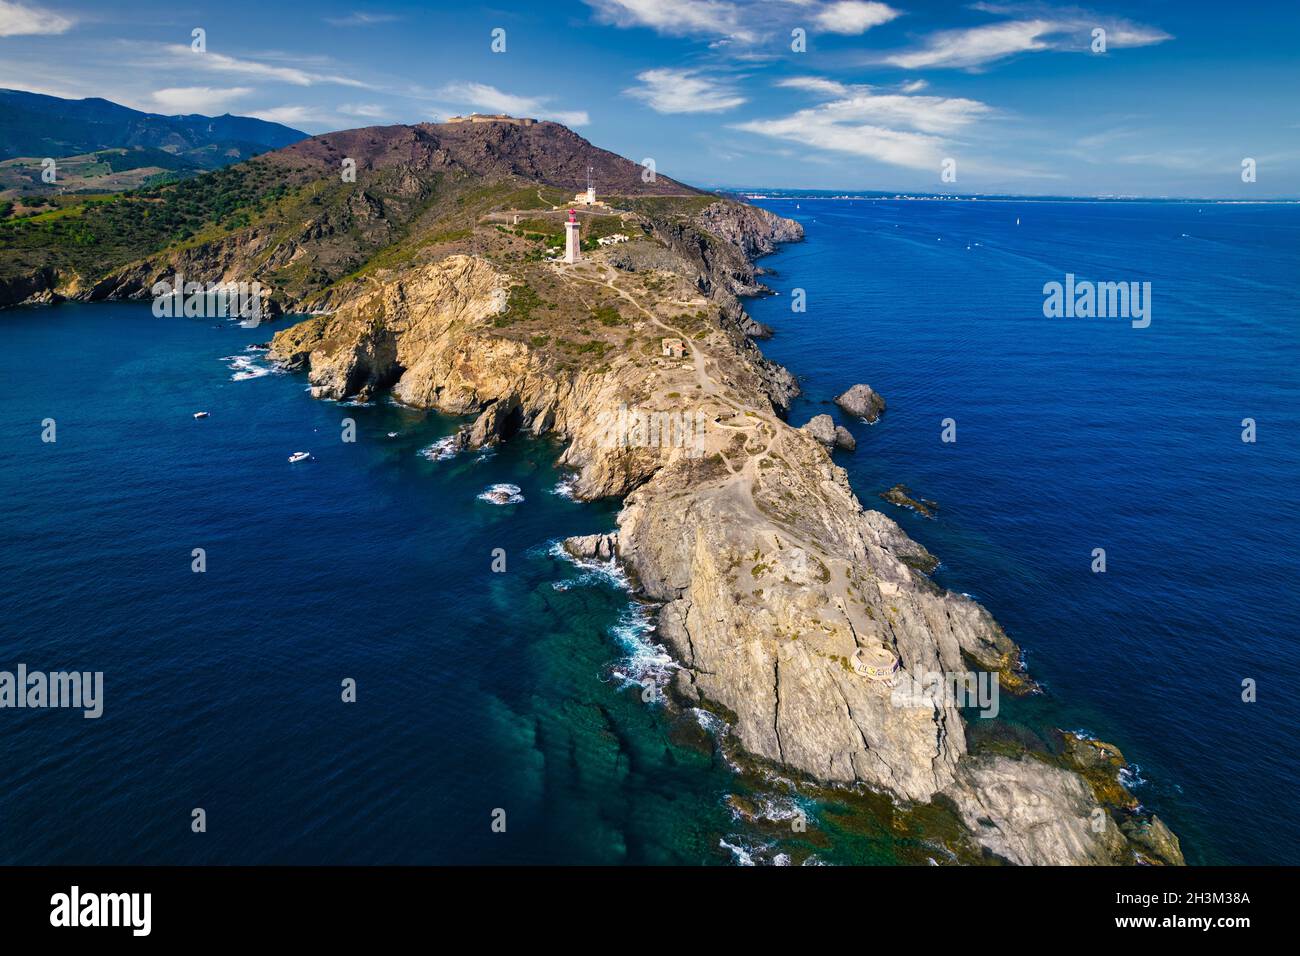 Vista aerea del faro di Cap Bear e della costa rocciosa di Vermeille lungo il Mediterraneo, Francia Foto Stock